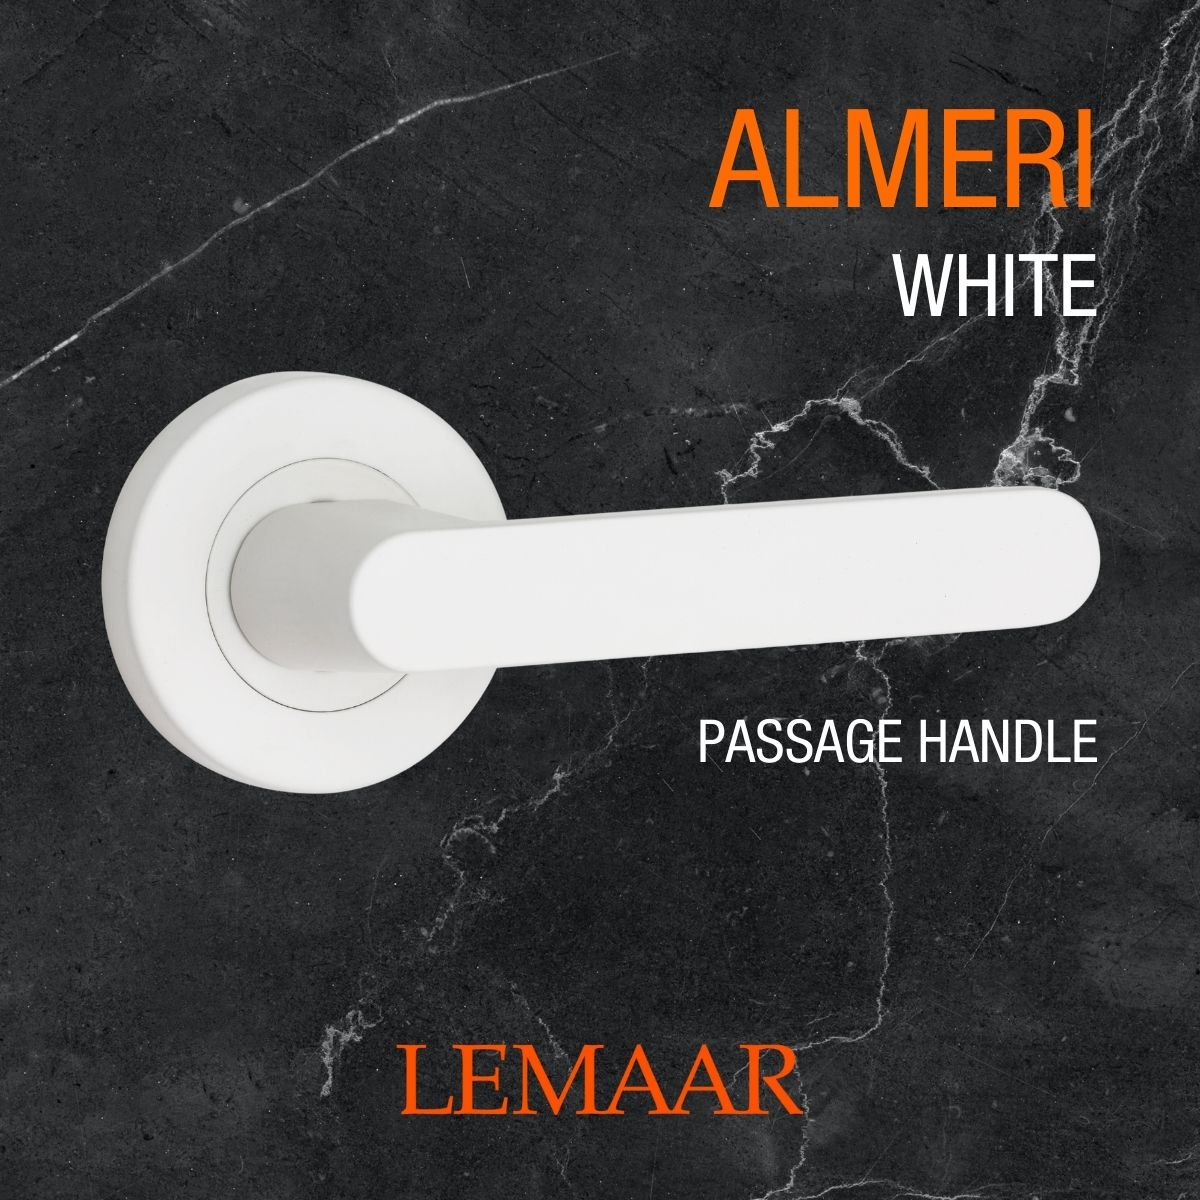 almeri white door handle lemaar v2